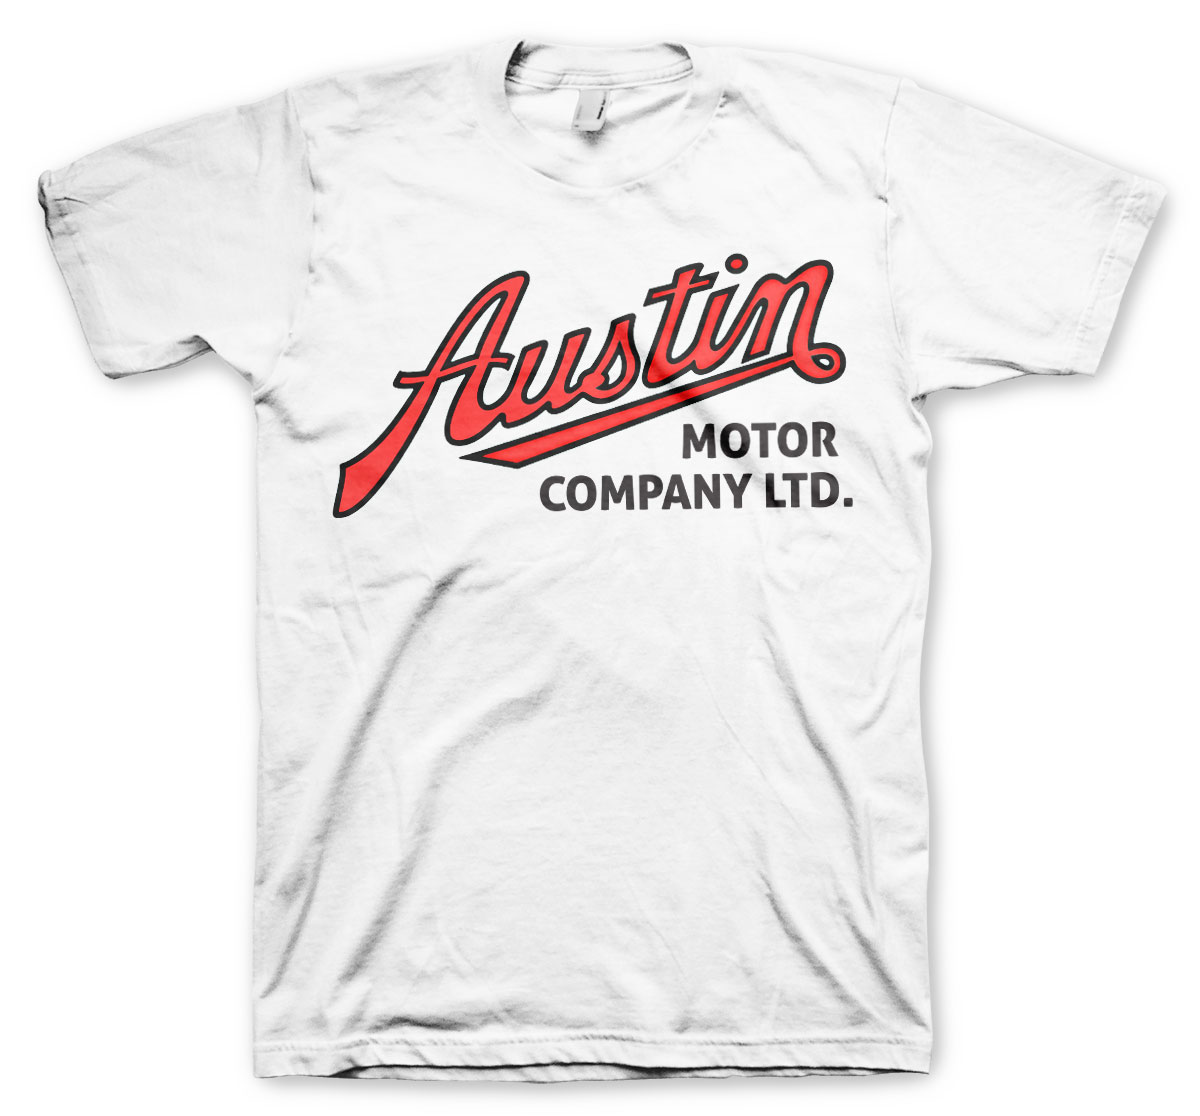 Tričko Austin Motor Company